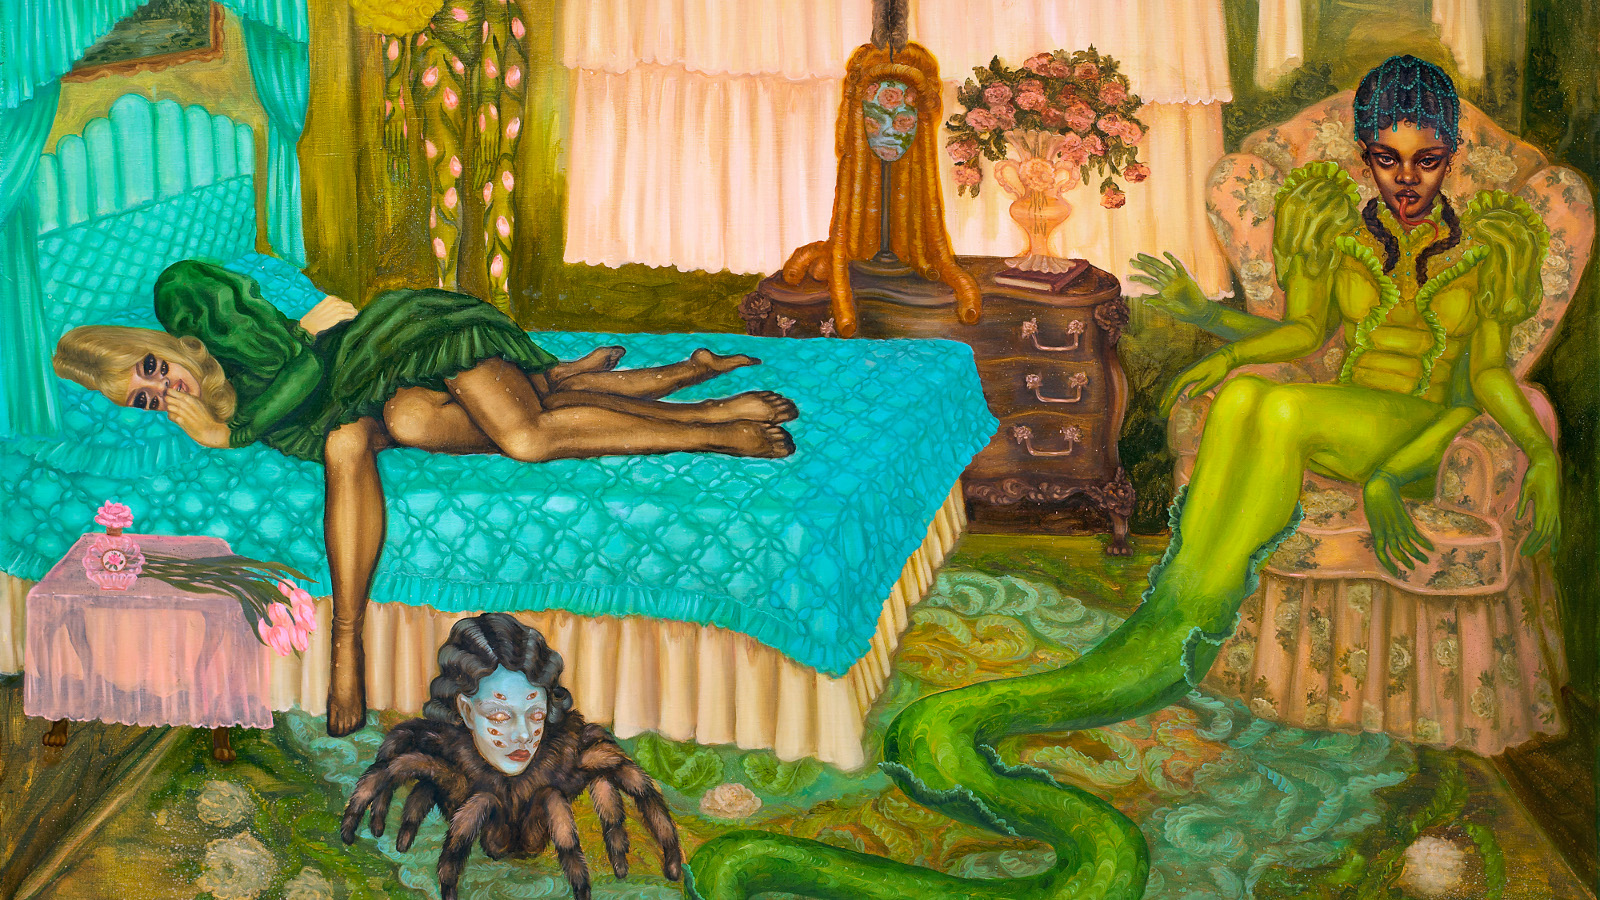 Kuvassa on huone, jossa on naisolentoja, joista yksiturkoosin värisellä peitolla sängyssä. Vihreällä matolla on iso skorpioni, jolla on naisen pää. Tuolilla on naishahmo, jolla on pitkä vihreä kapeneva häntä. Huone on koristeellinen.